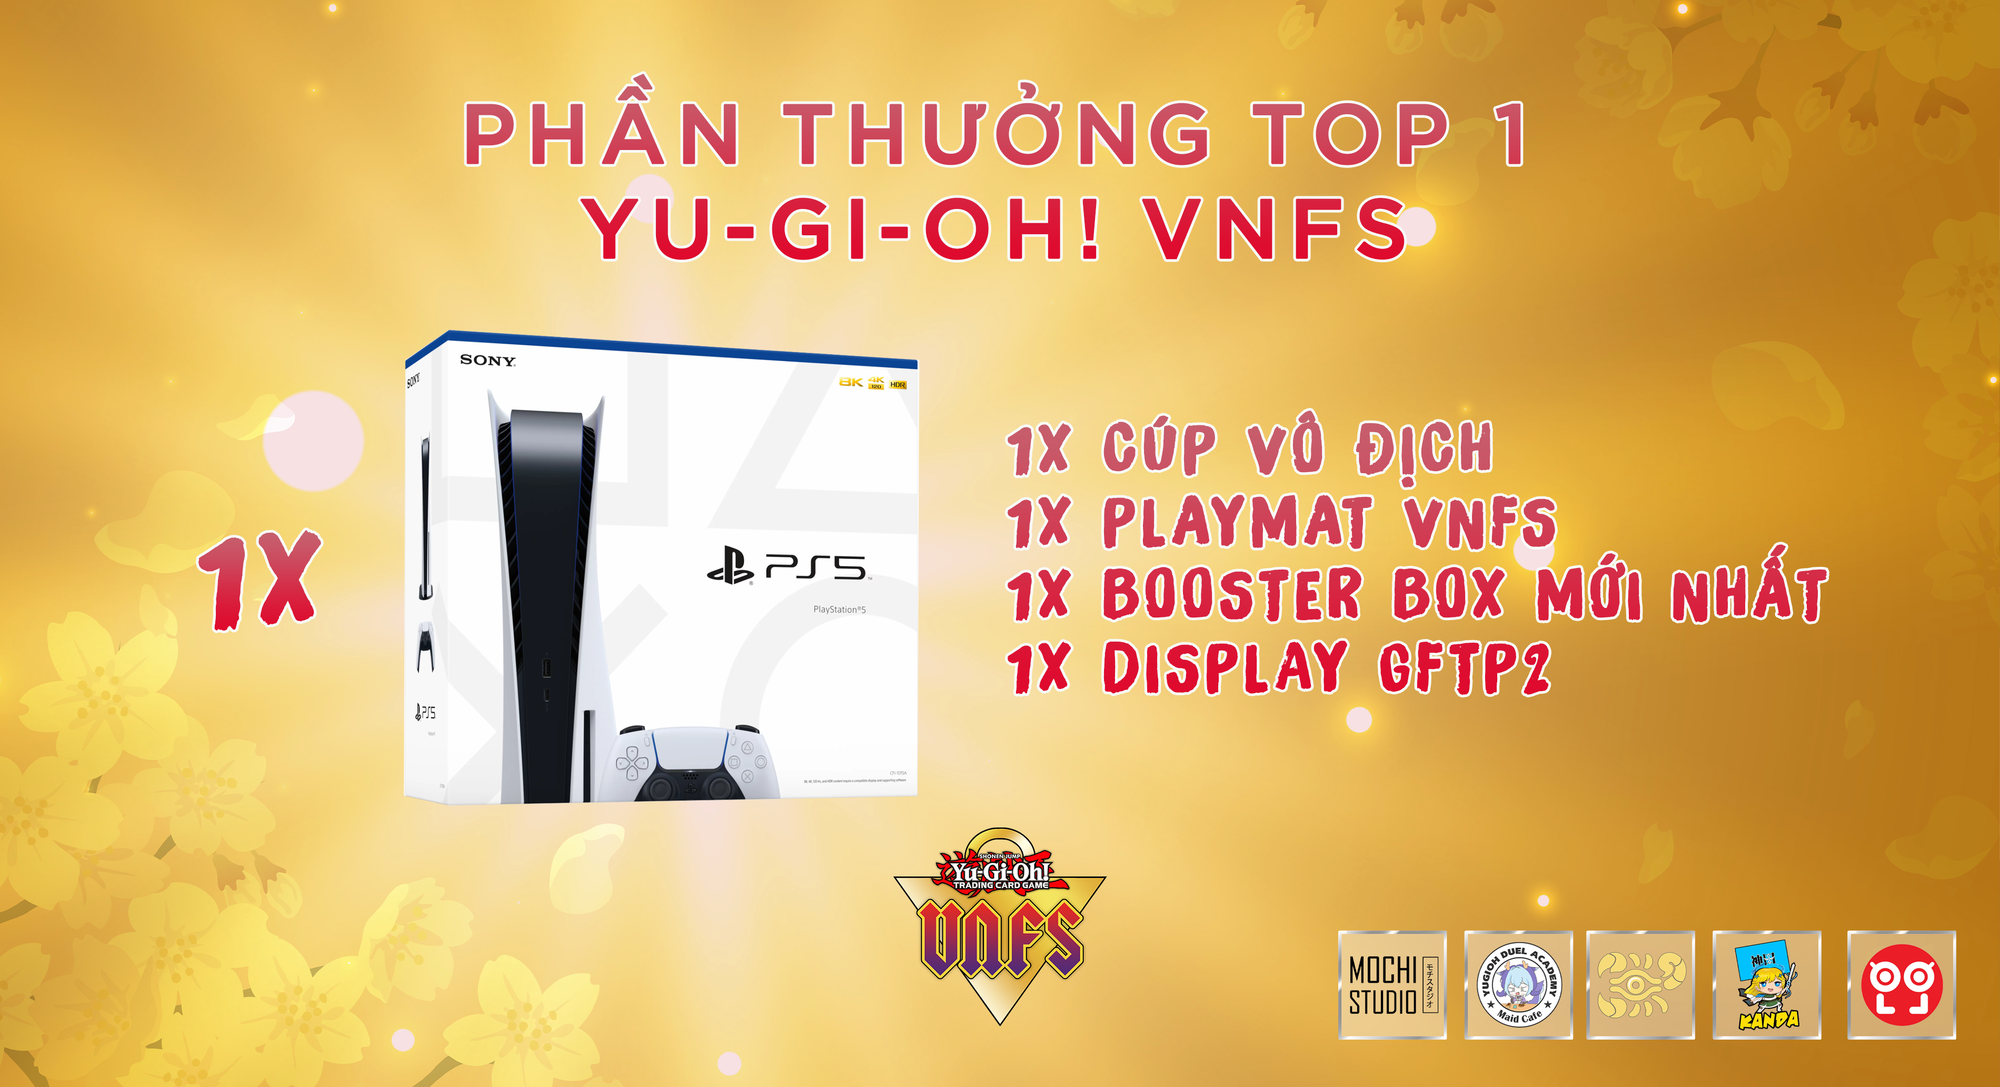 Yu-Gi-Oh! Vnfs – Lễ Hội Cosplay Và Giao Lưu Yu-Gi-Oh Tại Hà Nội Với Quy Mô  Cực Khủng